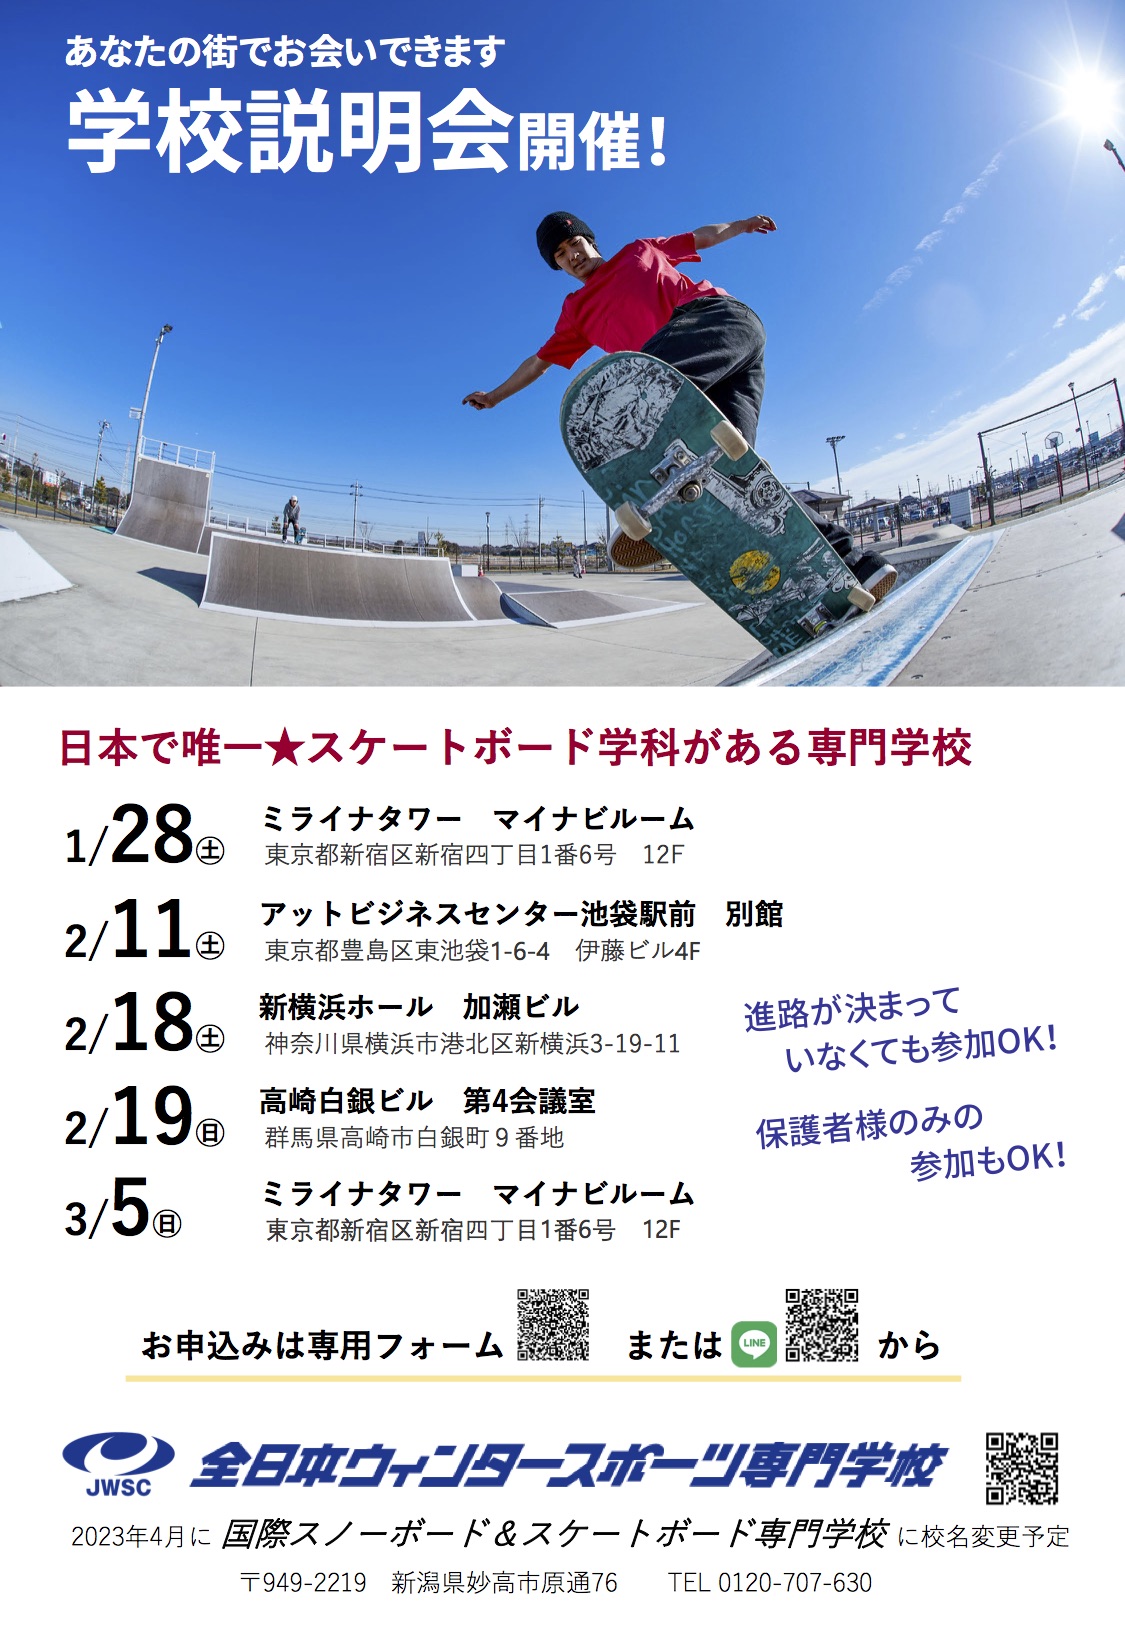 日本で唯一スケートボード学科がある専門学校が入学生を募集中